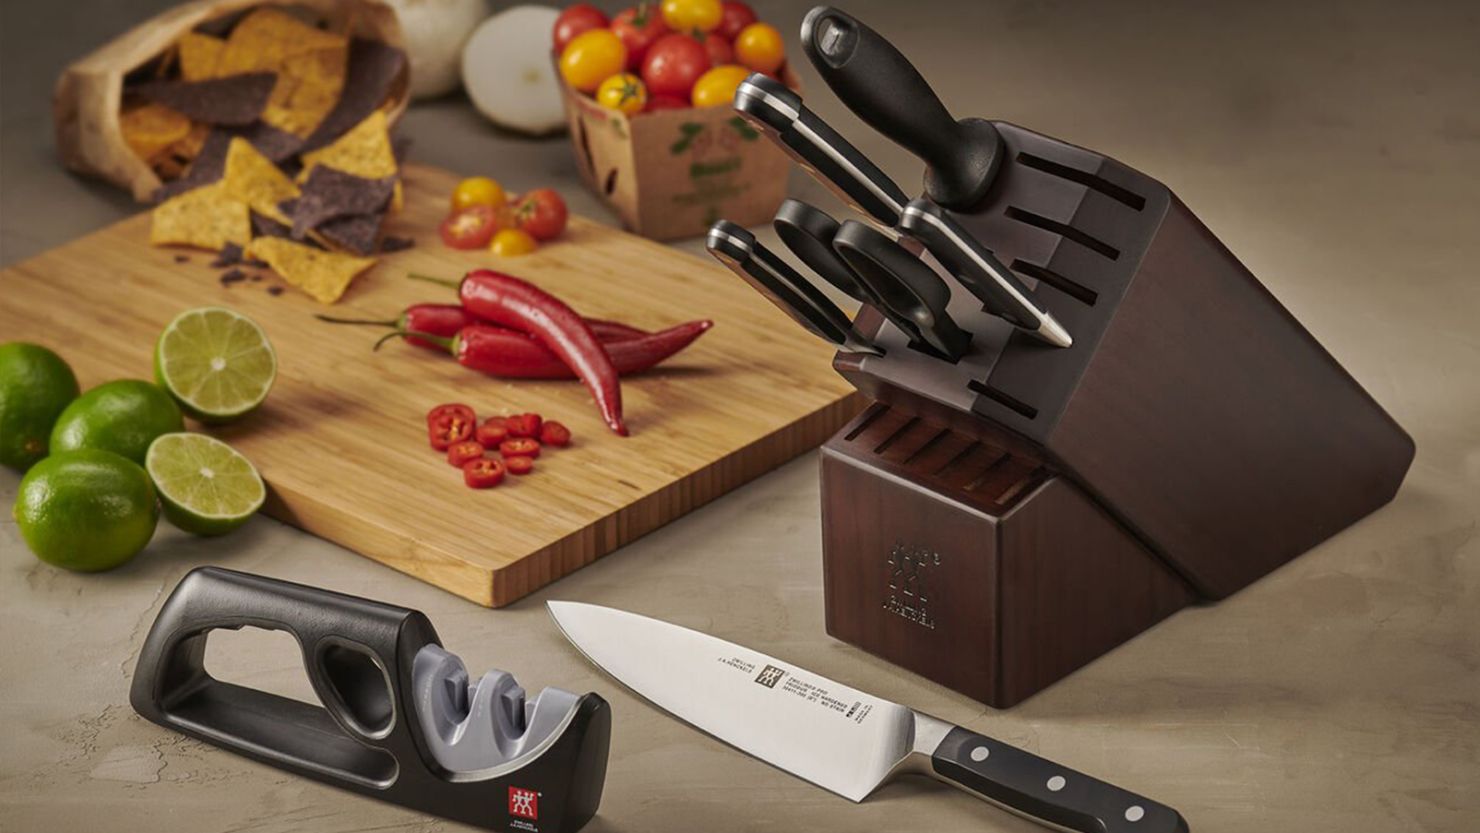 KitchenAid Ultra Sharp Serrated Blade Euro Peeler, Black, Dishwasher Safe